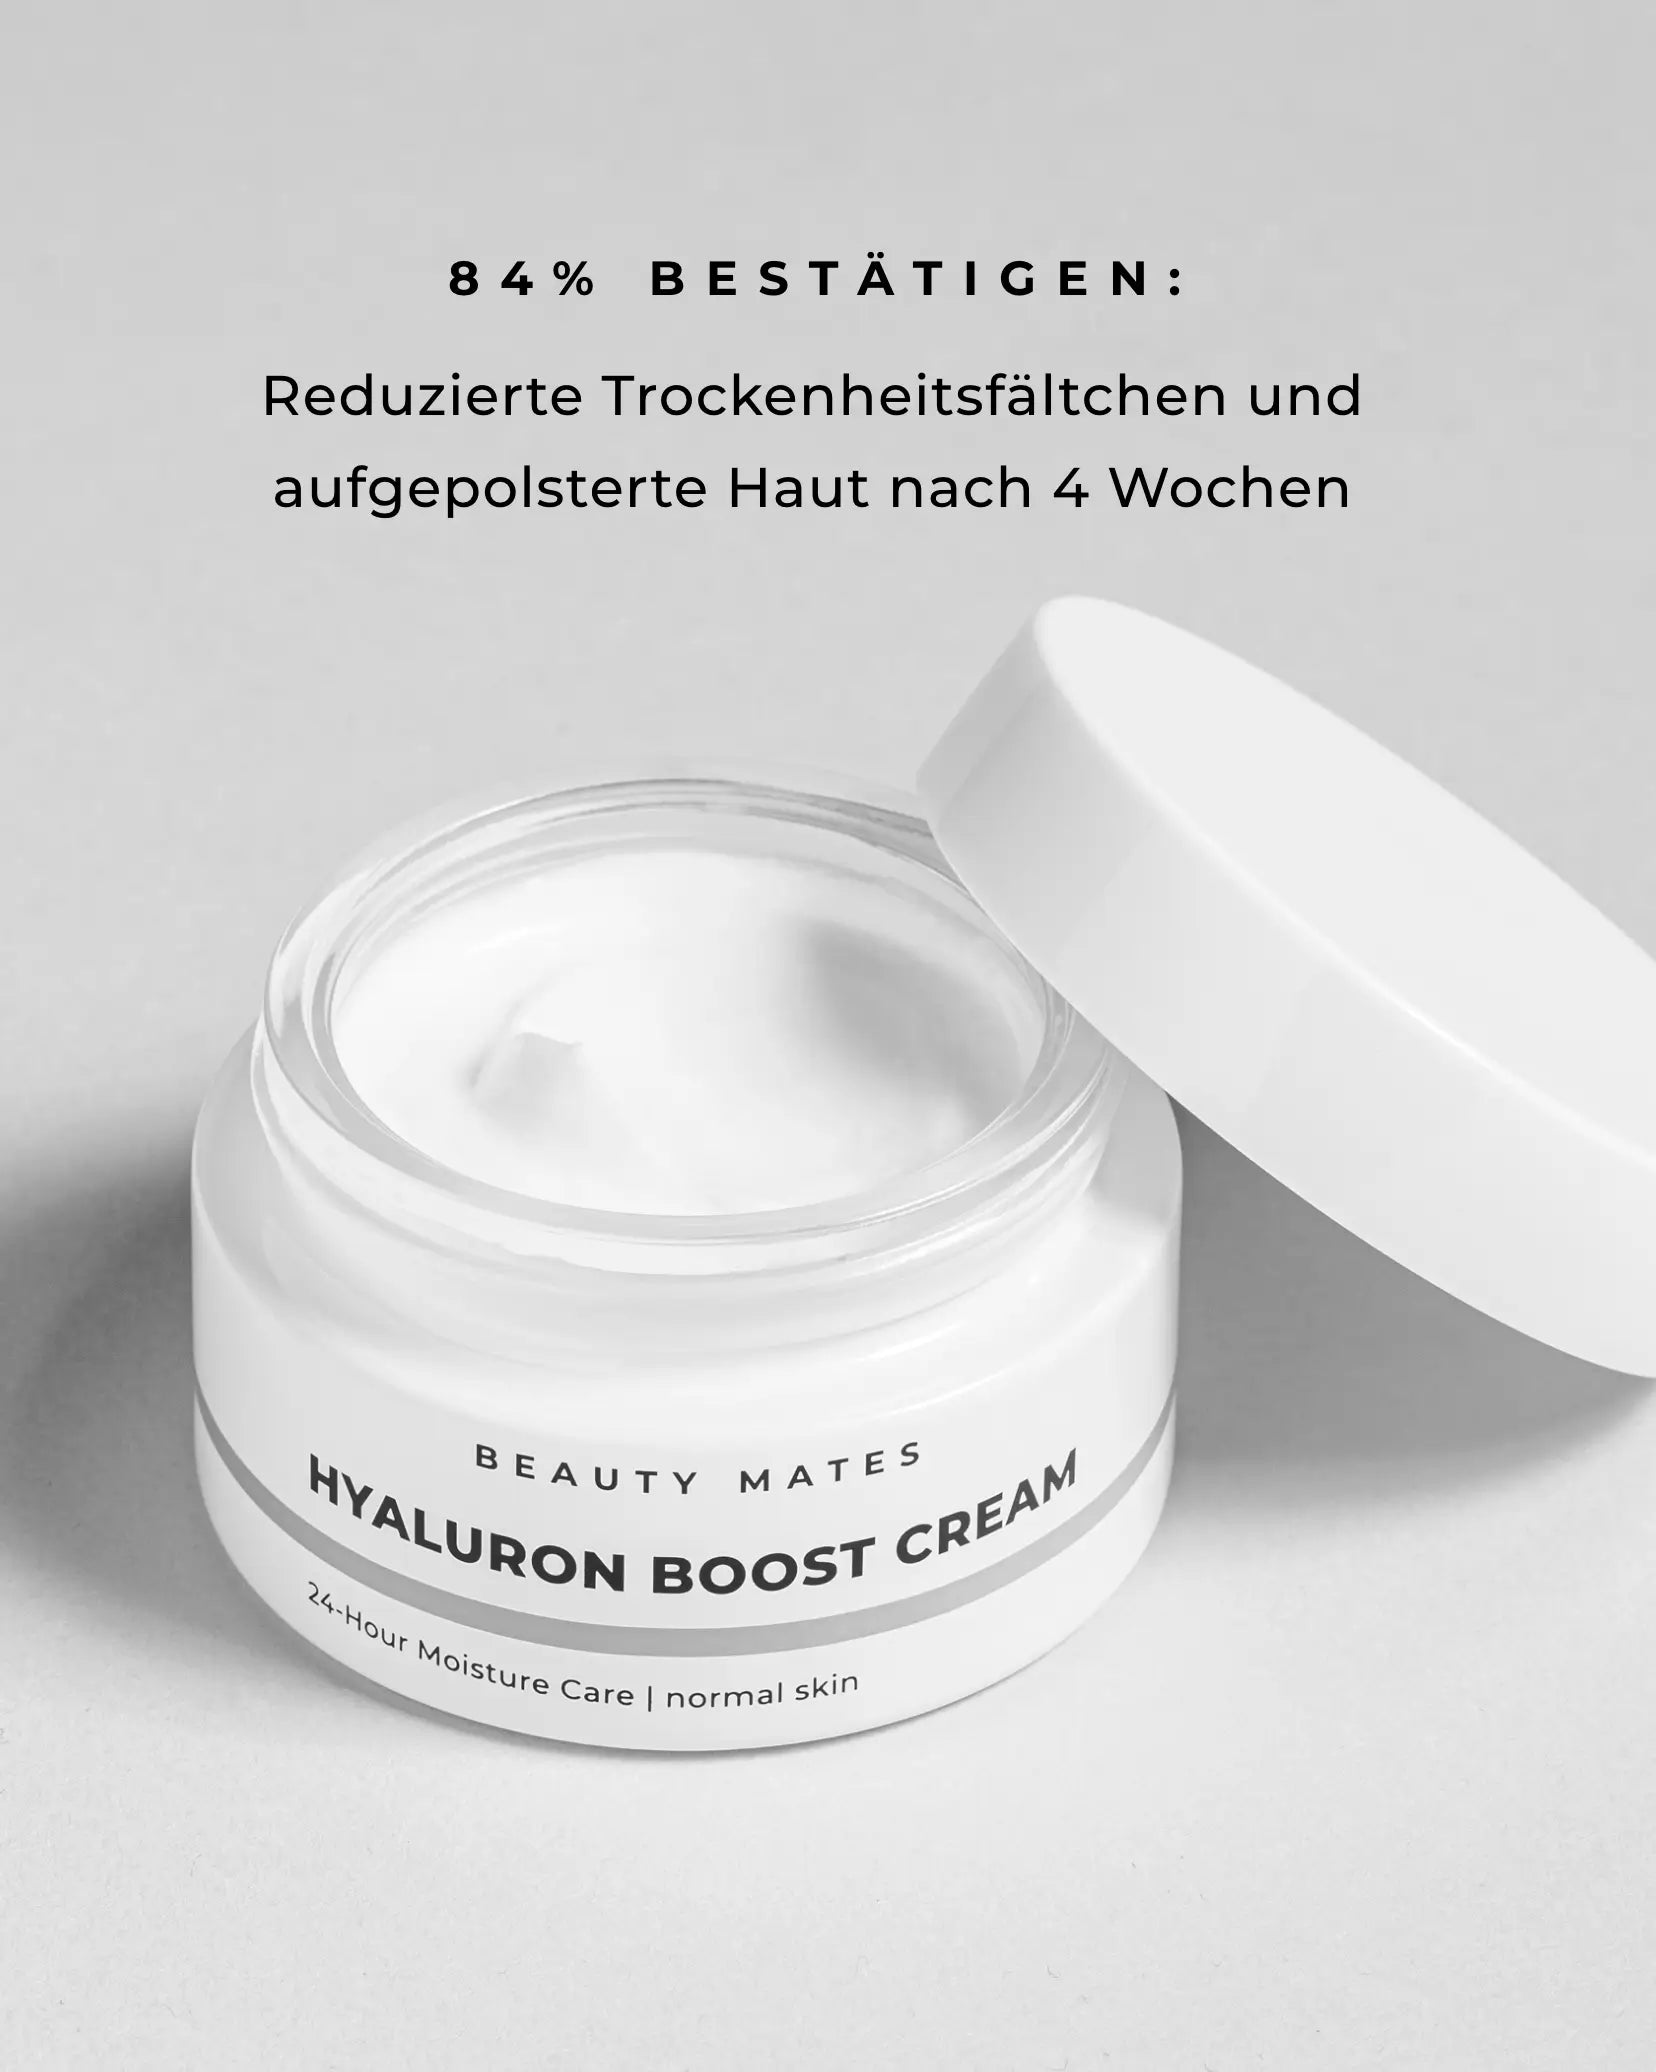 Beauty Mates Hyaluron Boost Cream in geöffnetem Tiegel mit Text "84% bestätigen: Reduzierte Trockenheitsfältchen und aufgepolsterte Haut nach 4 Wochen".